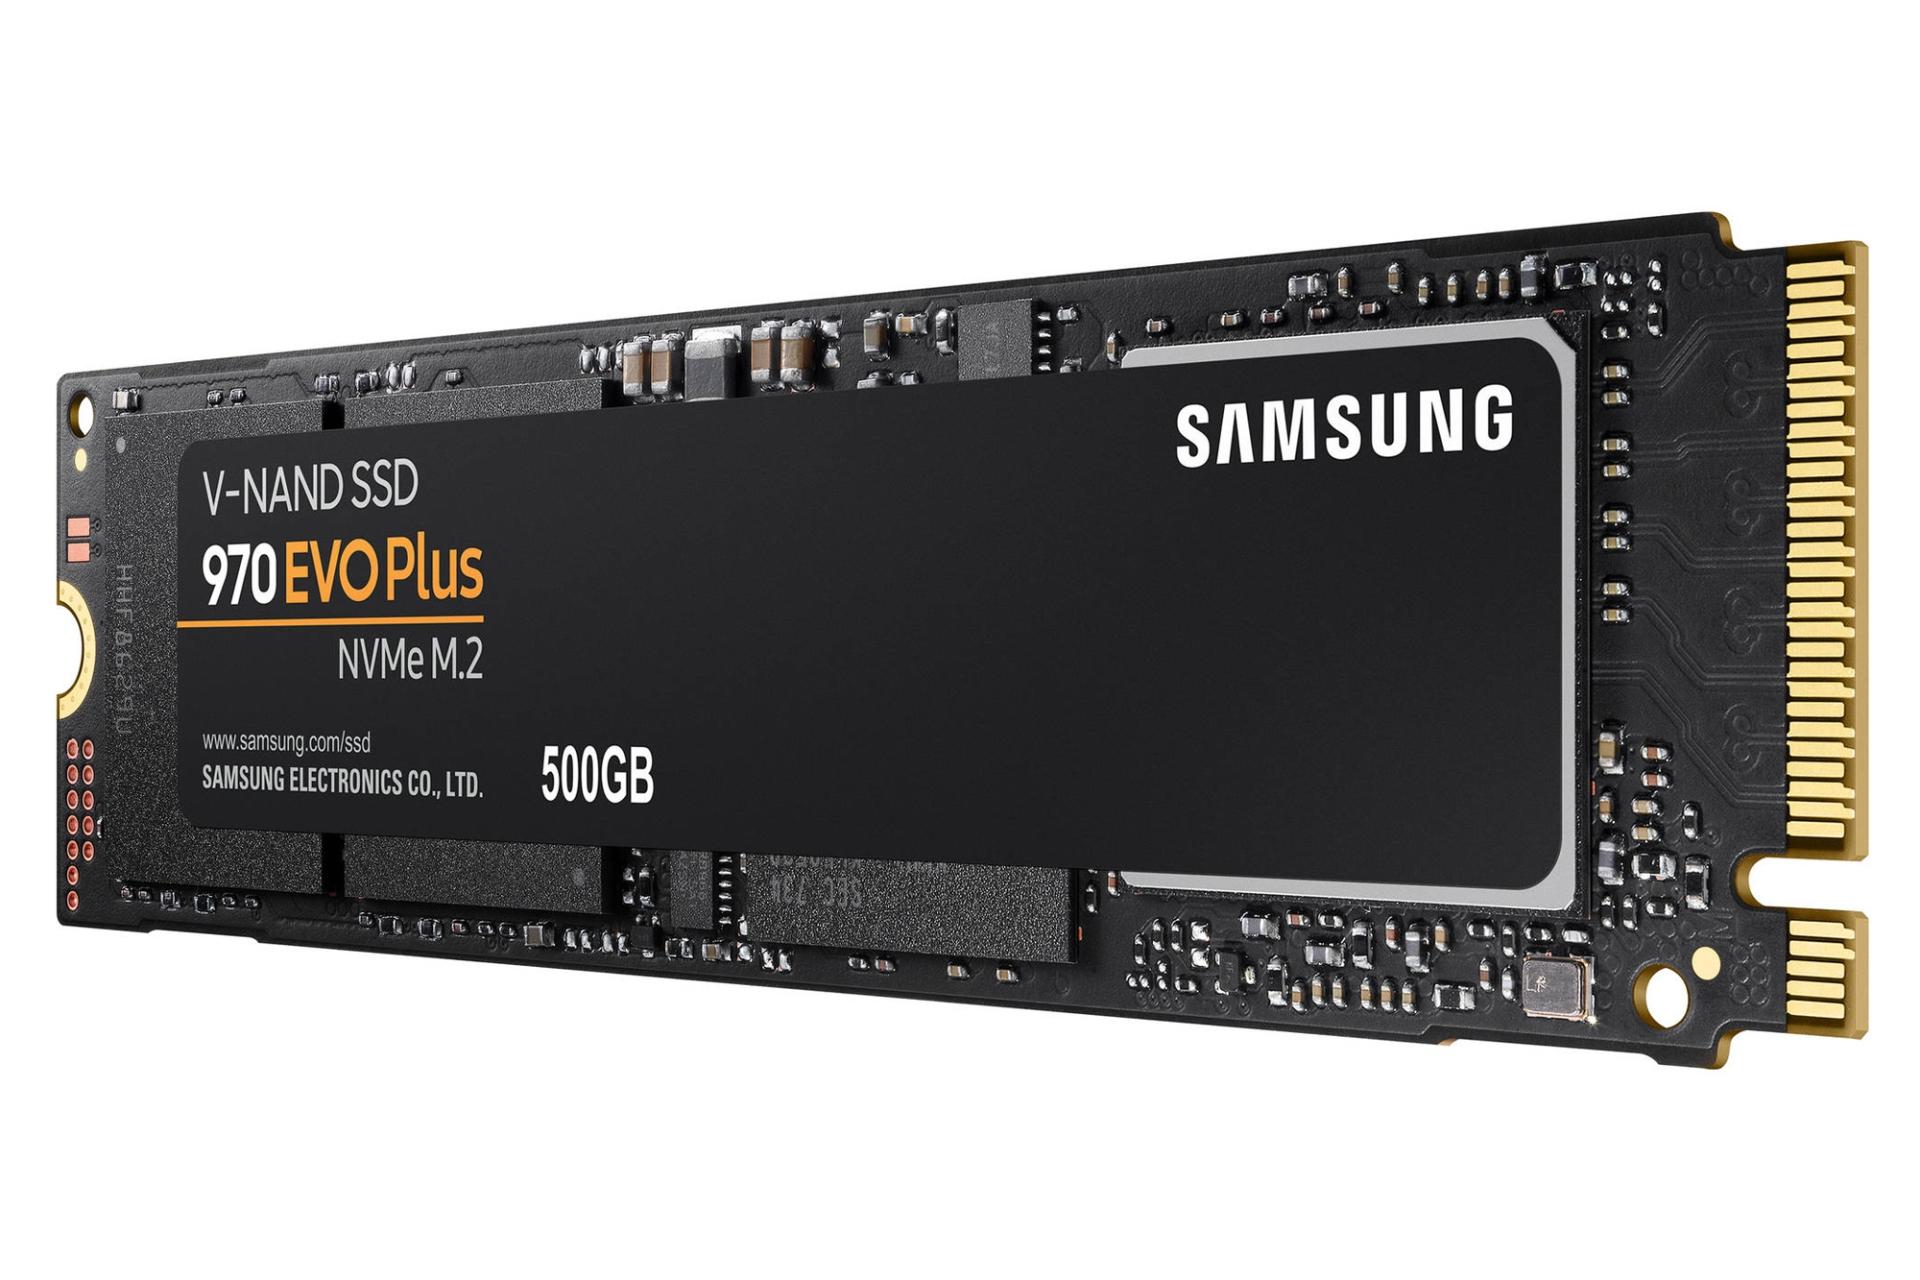 مرجع متخصصين ايران نماي راست SSD سامسونگ Samsung 970 EVO Plus NVMe M.2 500GB ظرفيت 500 گيگابايت